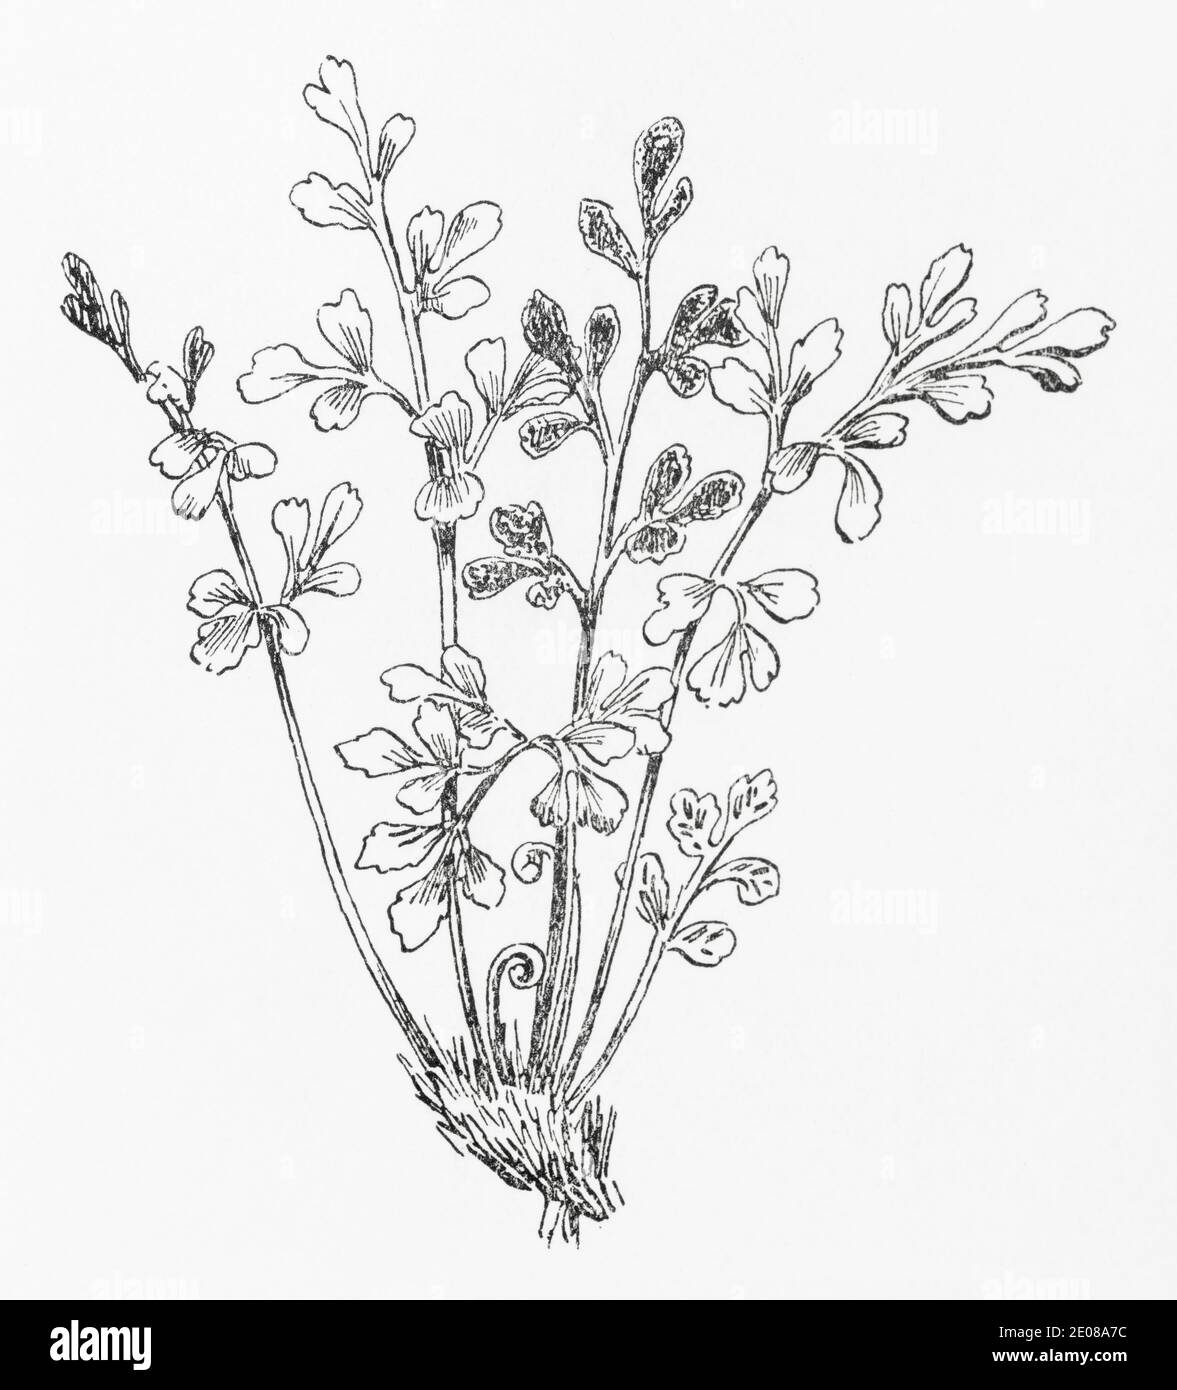 Ancienne gravure d'illustration botanique de Wall-rue Spleenwort / Asplenium ruta-muraria. Plante médicinale traditionnelle. Voir Remarques Banque D'Images